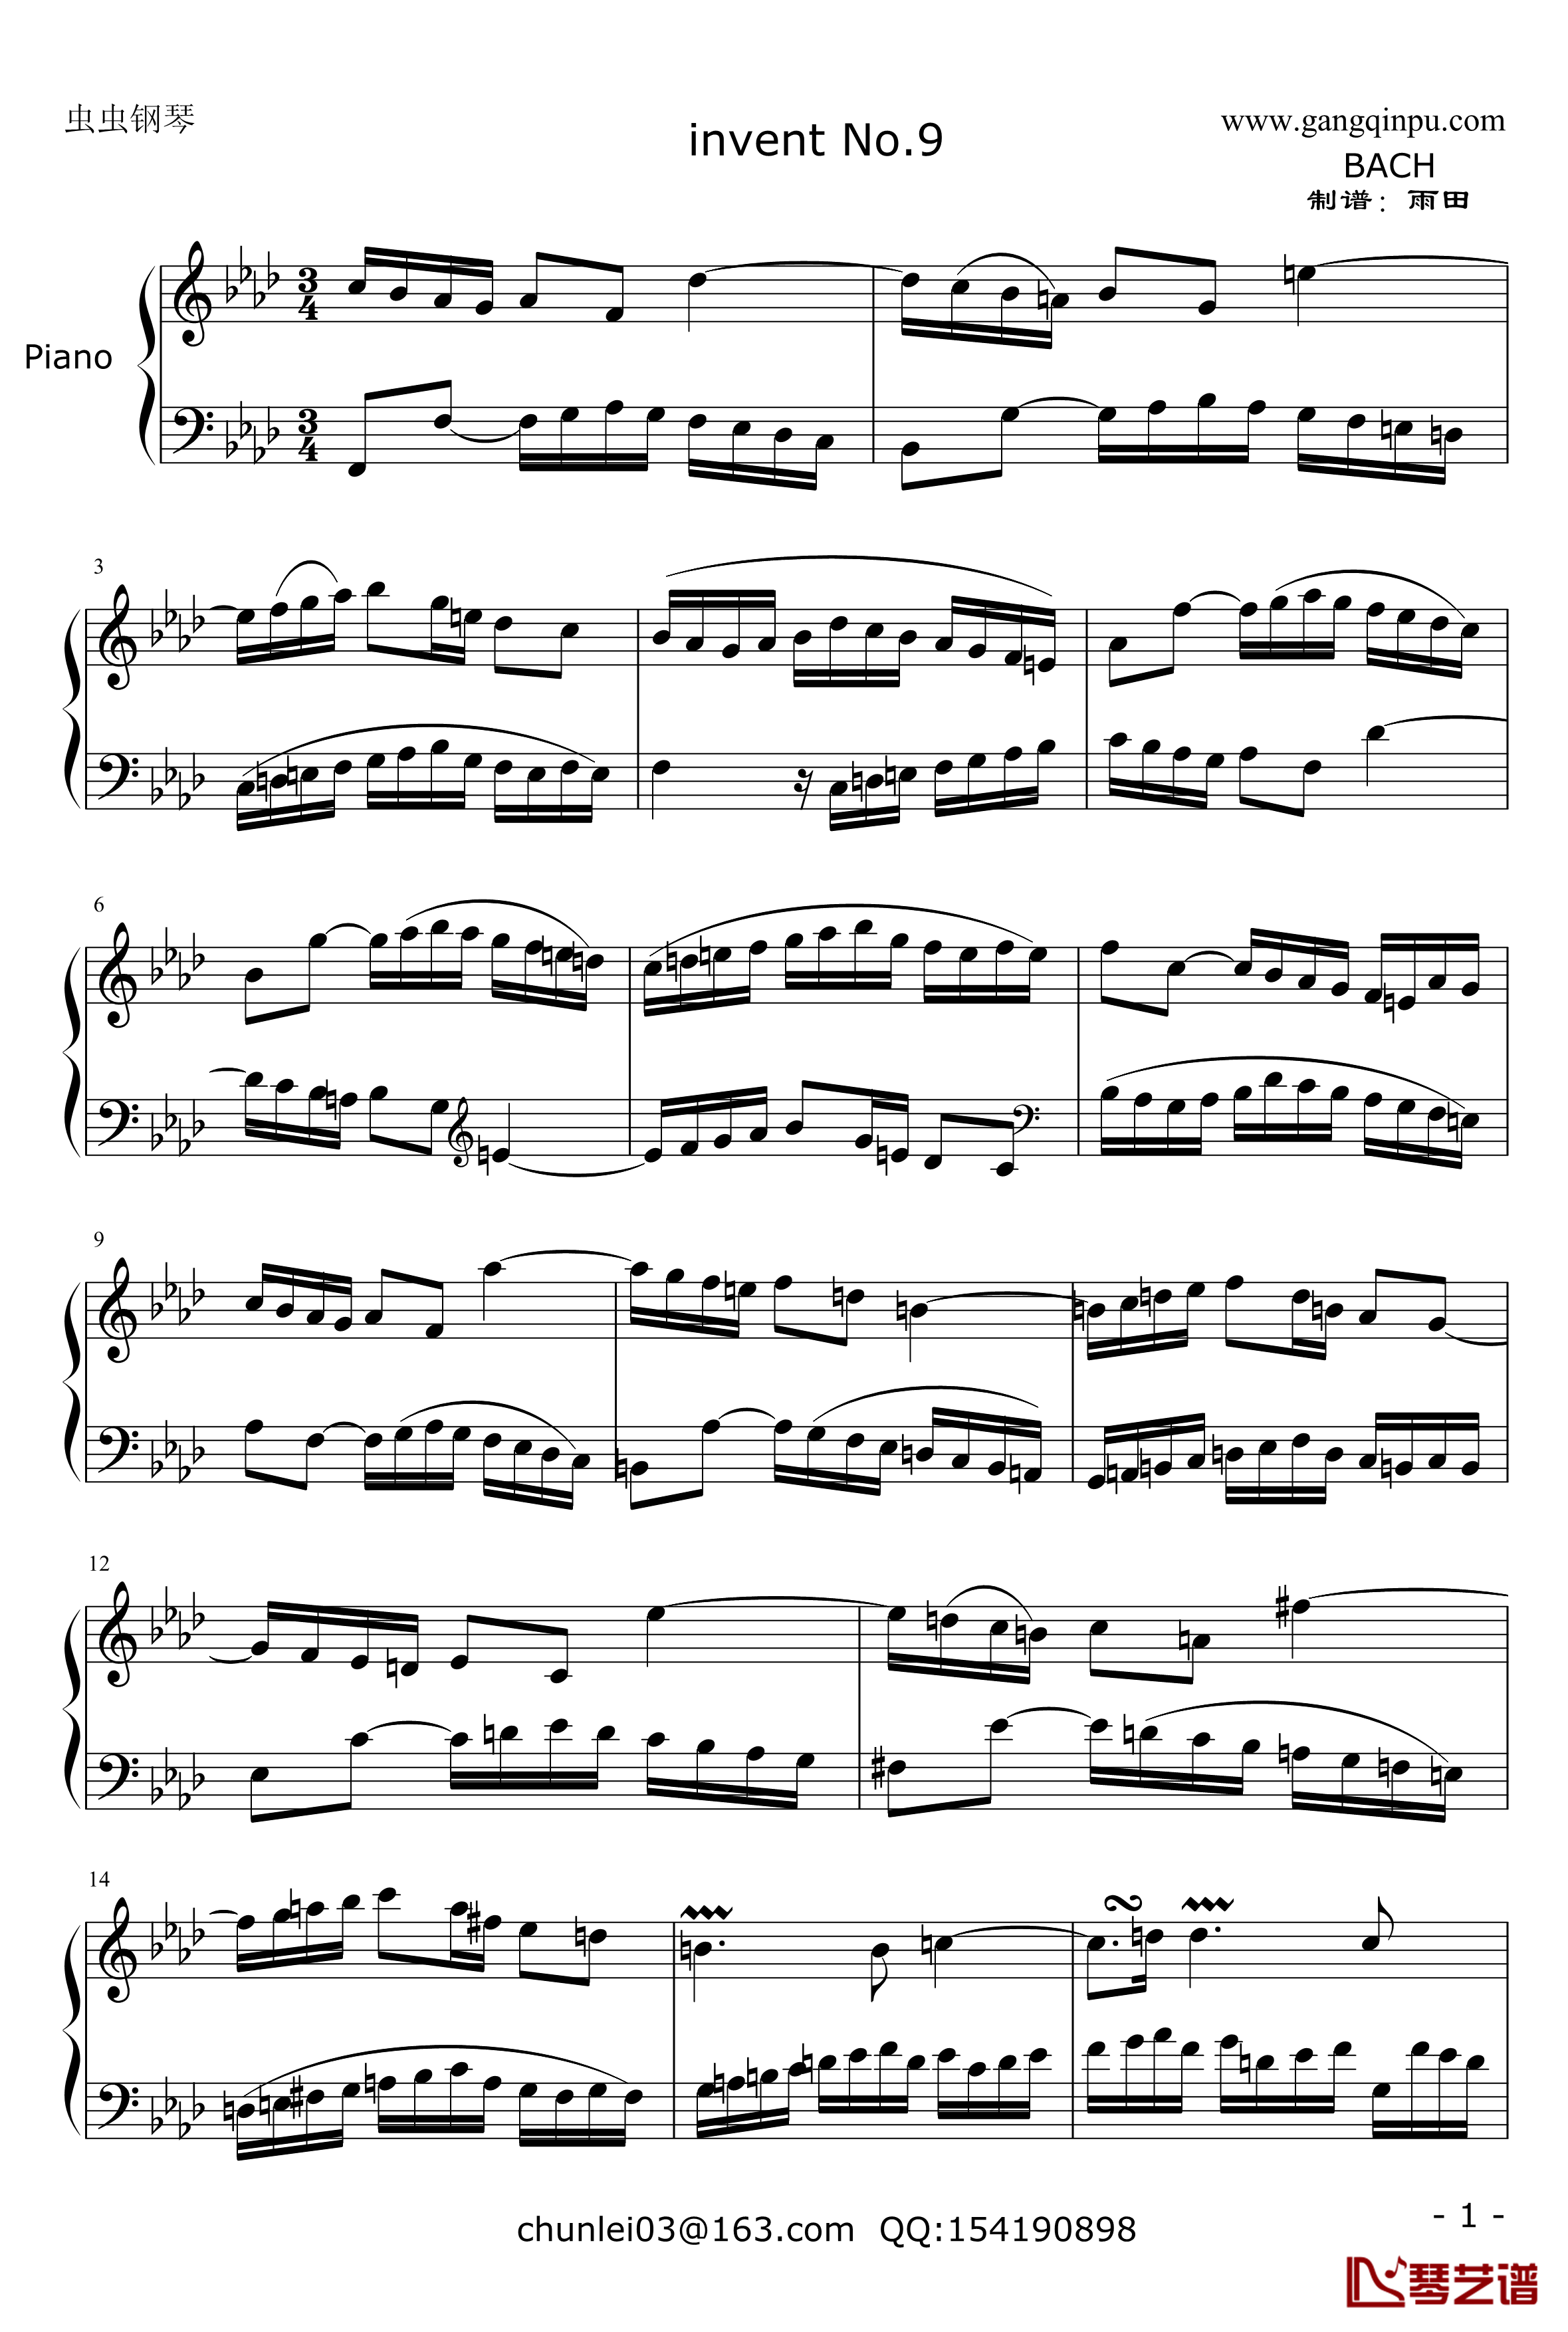 二部创意NO.9 钢琴谱-巴赫-P.E.Bach-第九首1